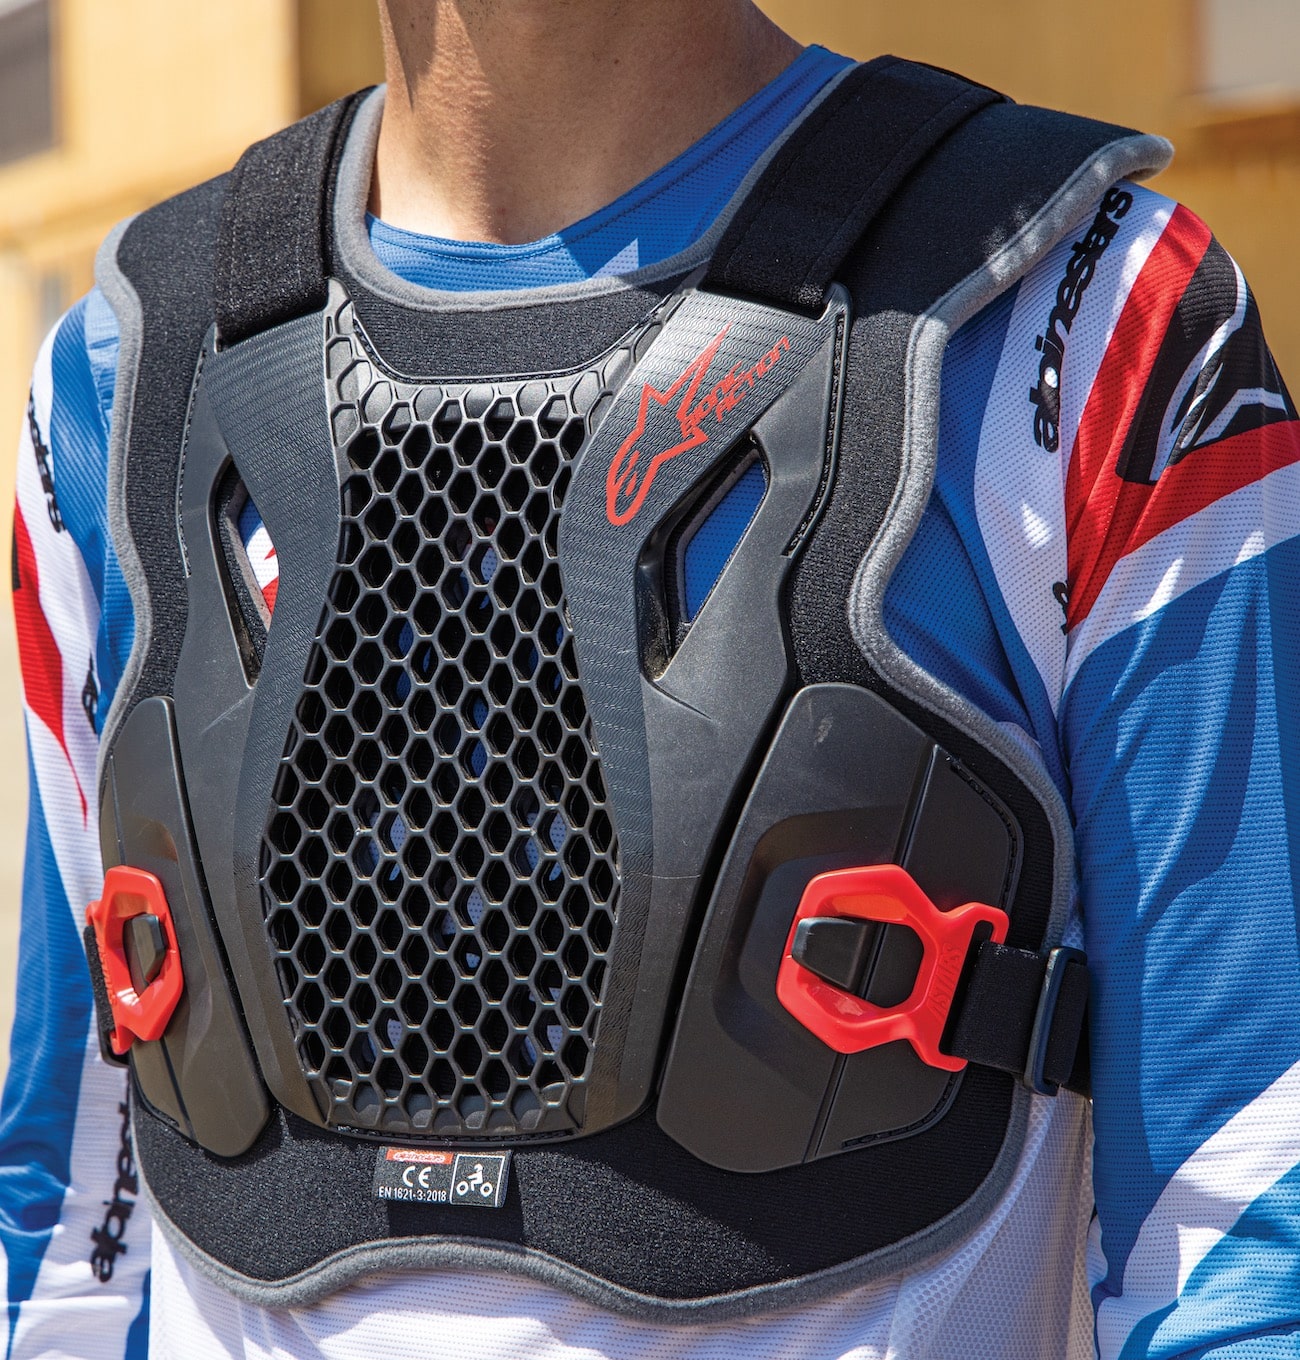 Protecciones motocross: Seguridad para el motorista con una extensa  variedad Petos Acerbis Alpinestars Forcefield Rainers